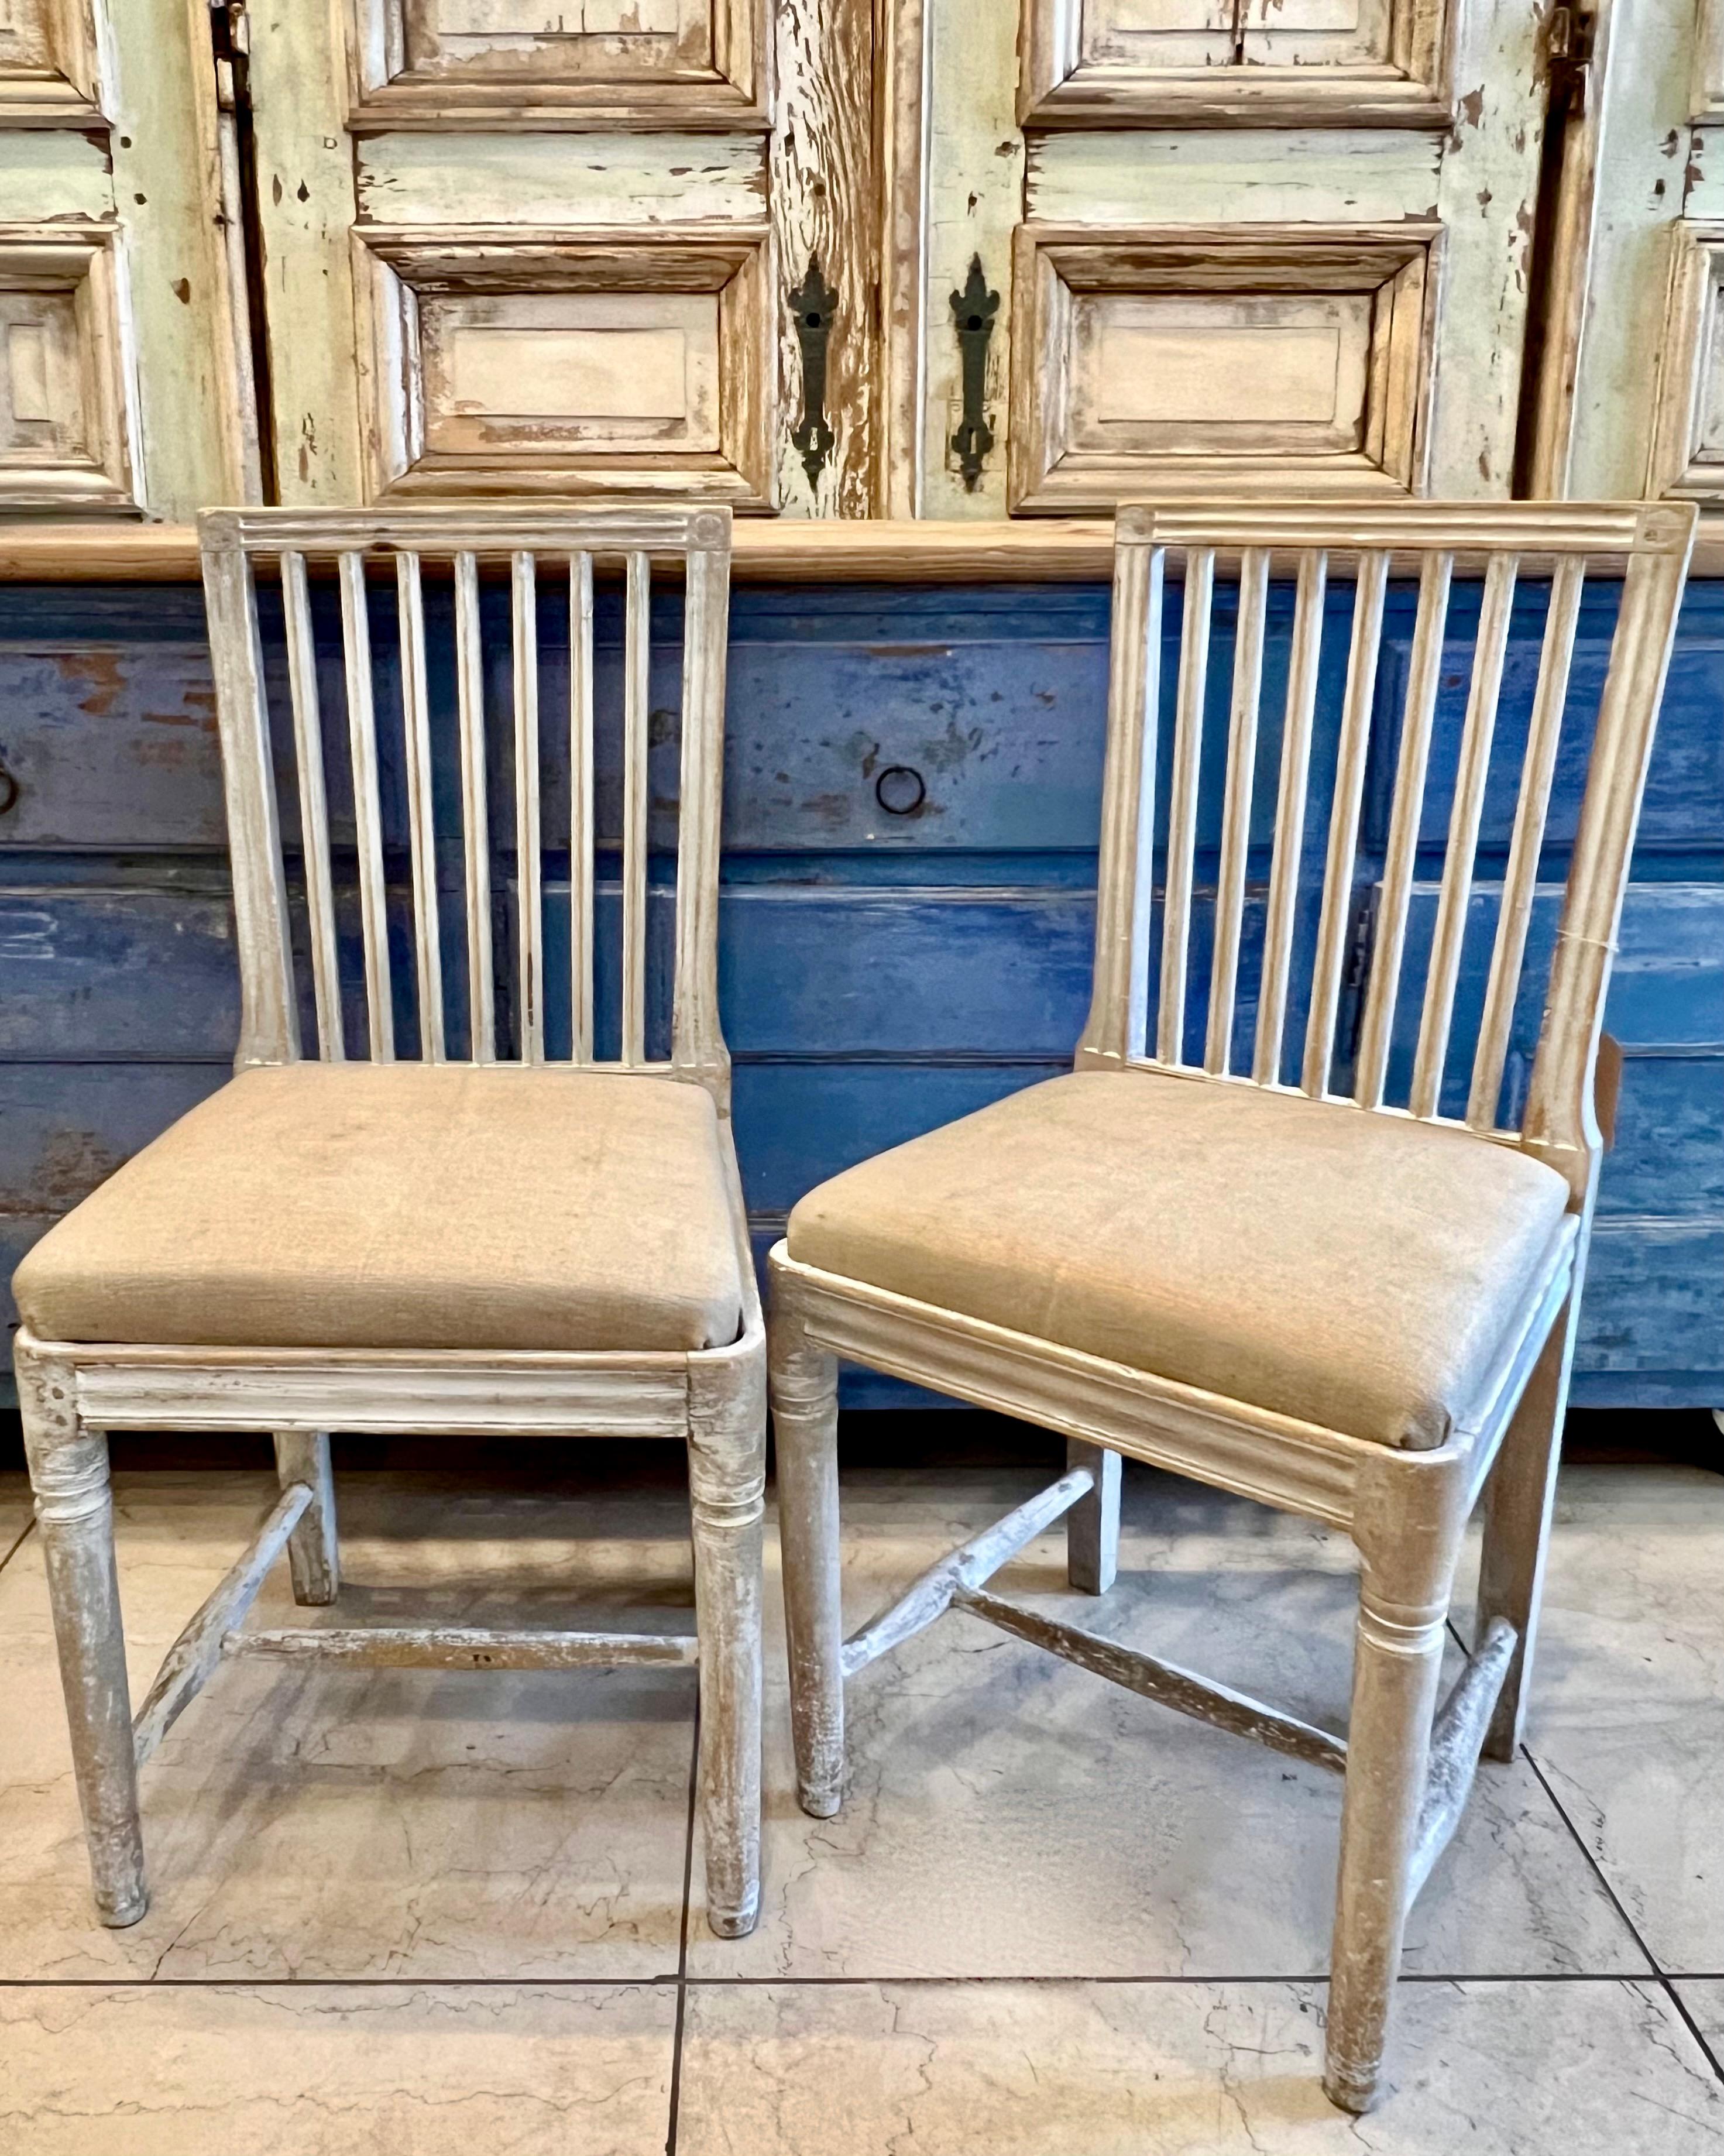 Paire de chaises suédoises du début du 19e siècle, avec dossier cannelé, traverse avant cannelée et pieds tournés effilés.
Les coussins d'assise sont recouverts de lin.